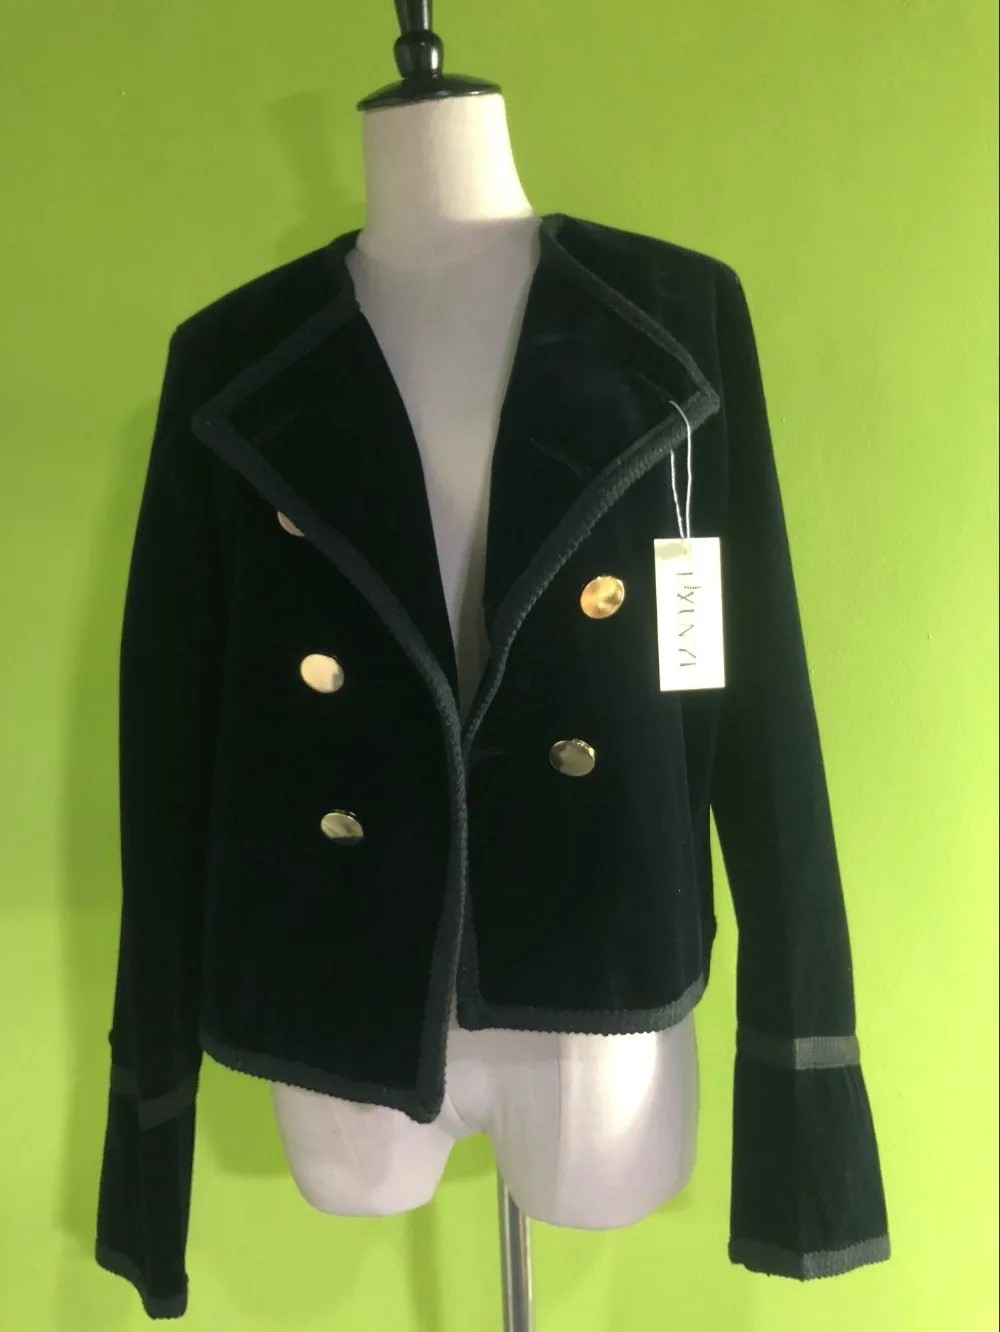 LXUNYI Лидер продаж весенние женские бархатные куртки и пальто короткие модные тонкие двубортные бархатные куртки на пуговицах